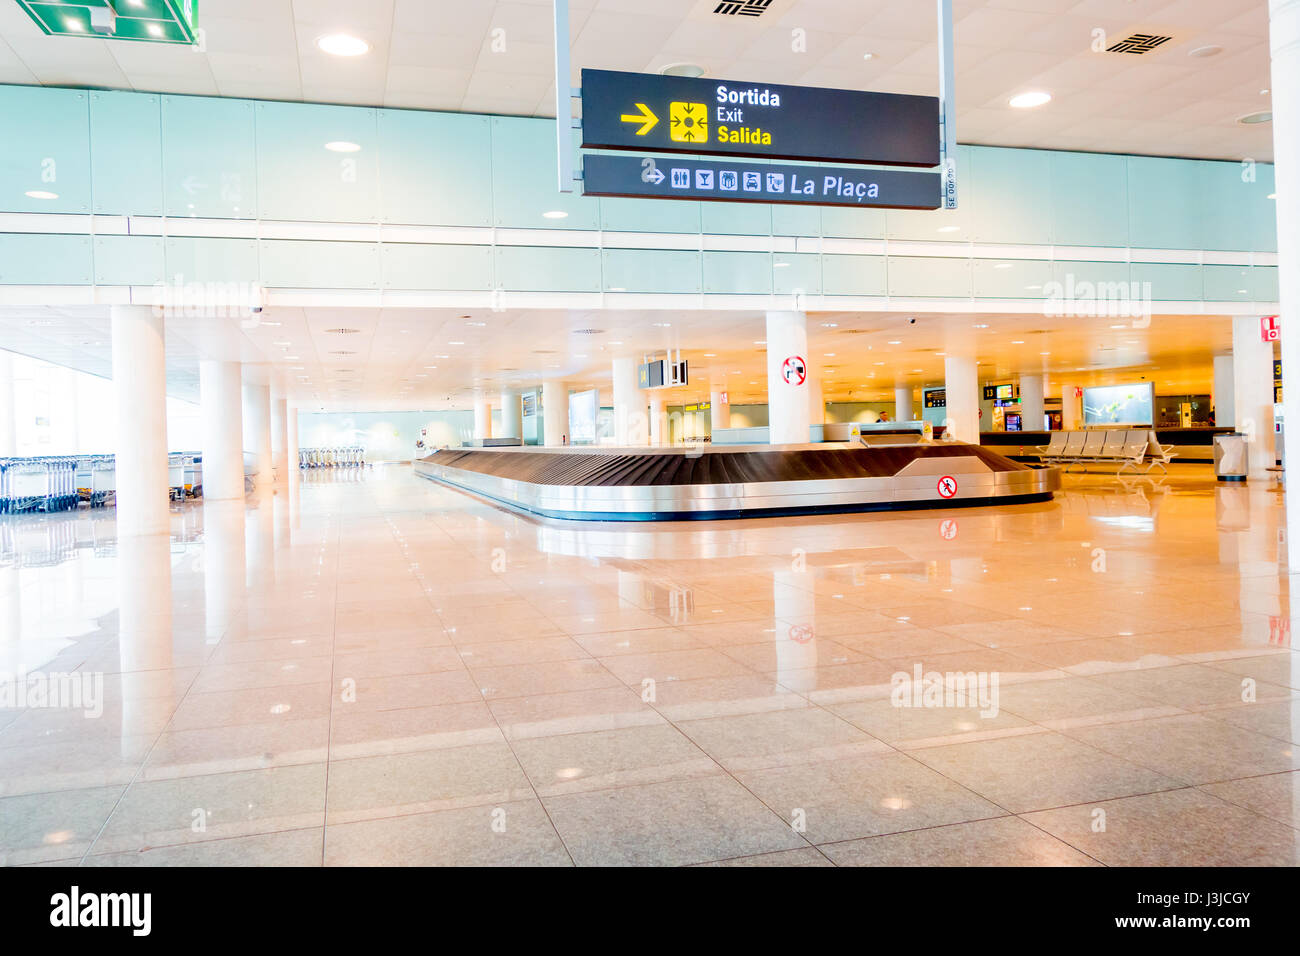 Barcelone, Espagne - 8 août, 2015 : tapis roulant pour bagages des arrivées à l'intérieur grand hall de couleur vive à l'aéroport. Banque D'Images